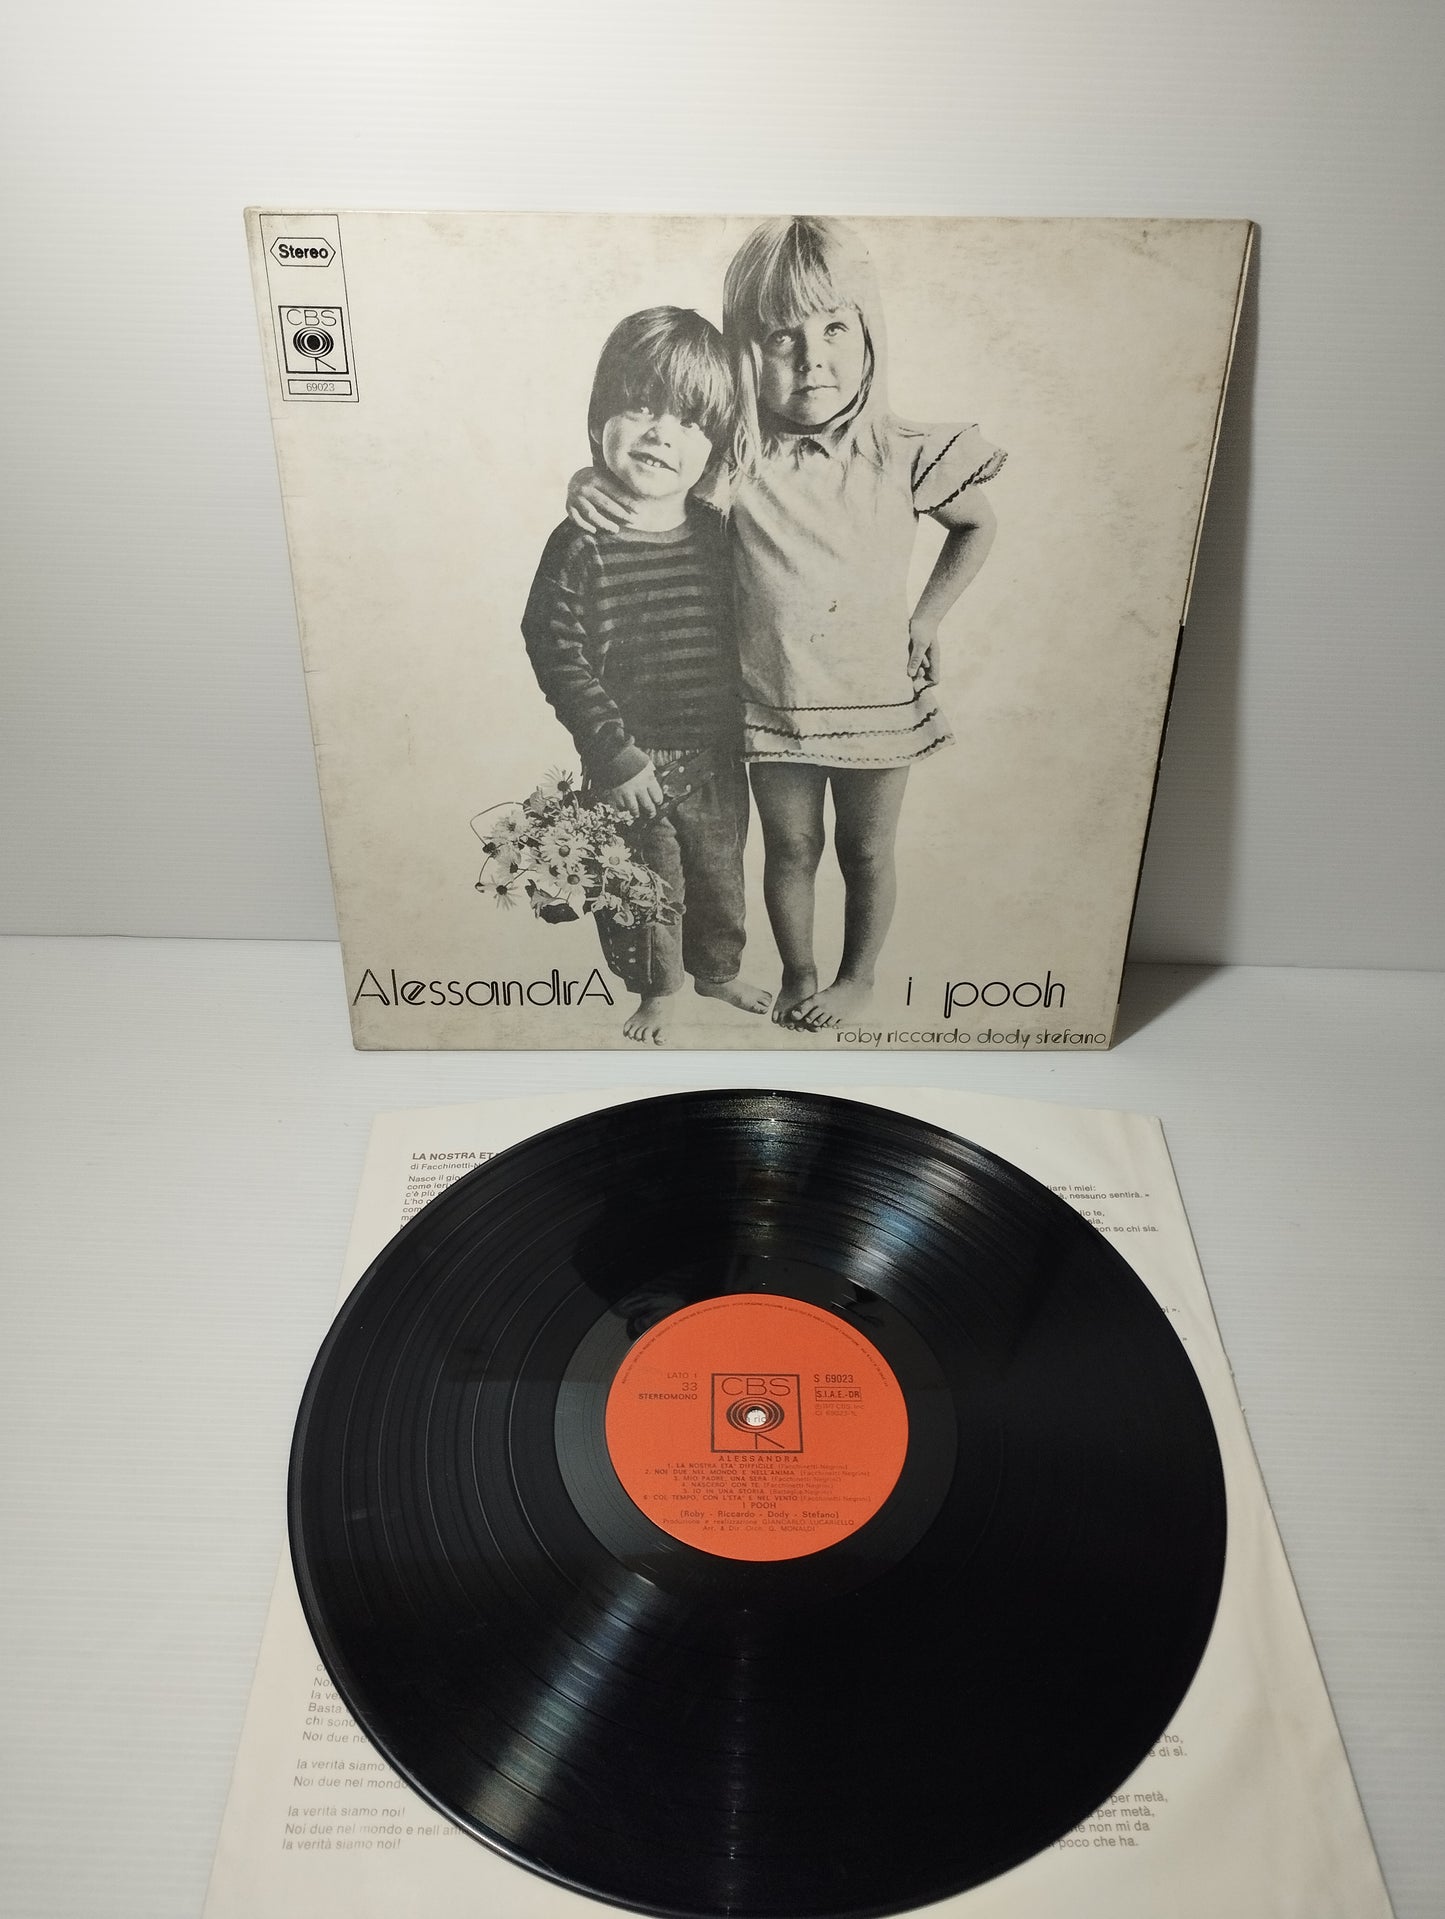 Alessandra I Pooh LP 33 giri
Edito nel 1972 da CBS cod.69023